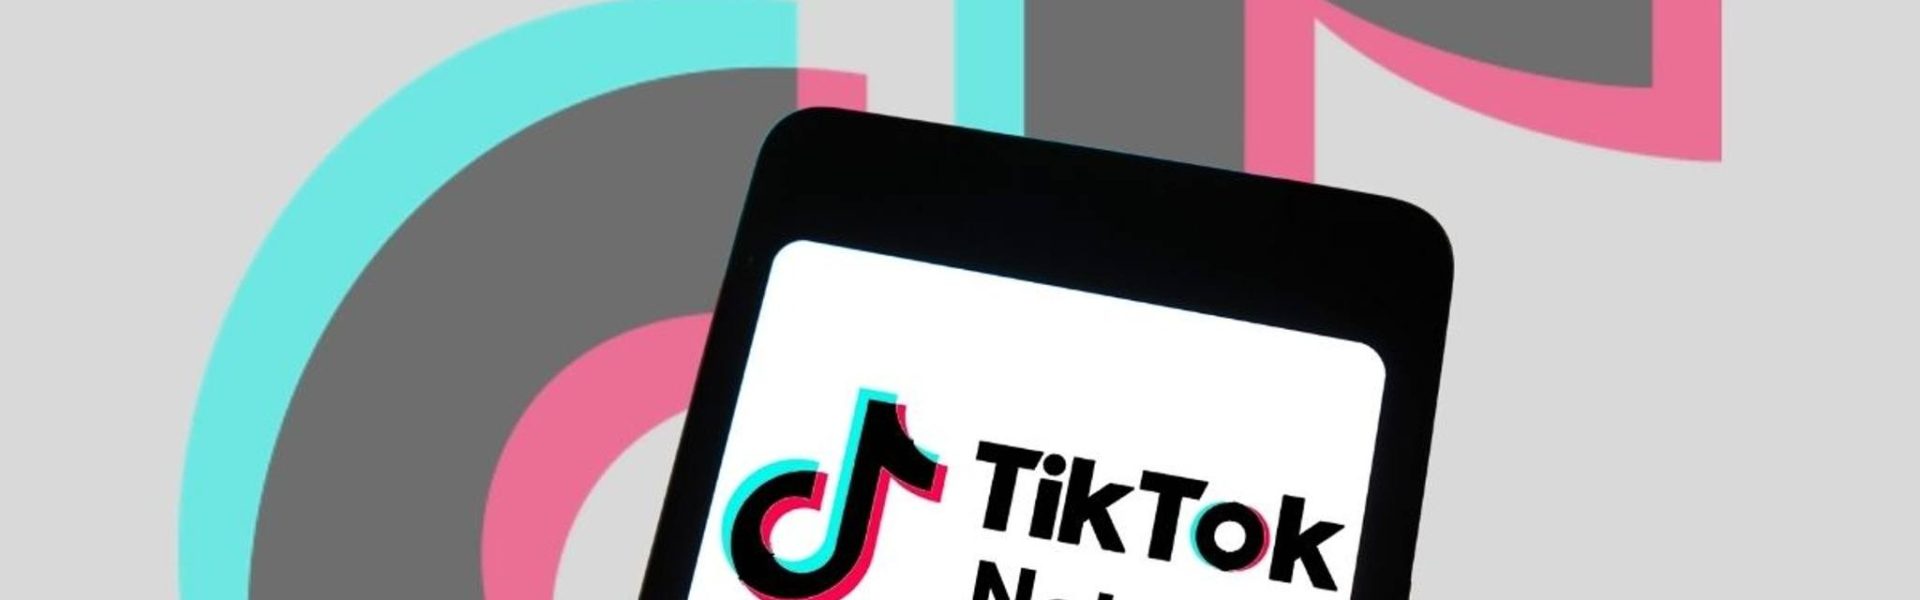 Tiktok prueba con una app muy similar a Instagram